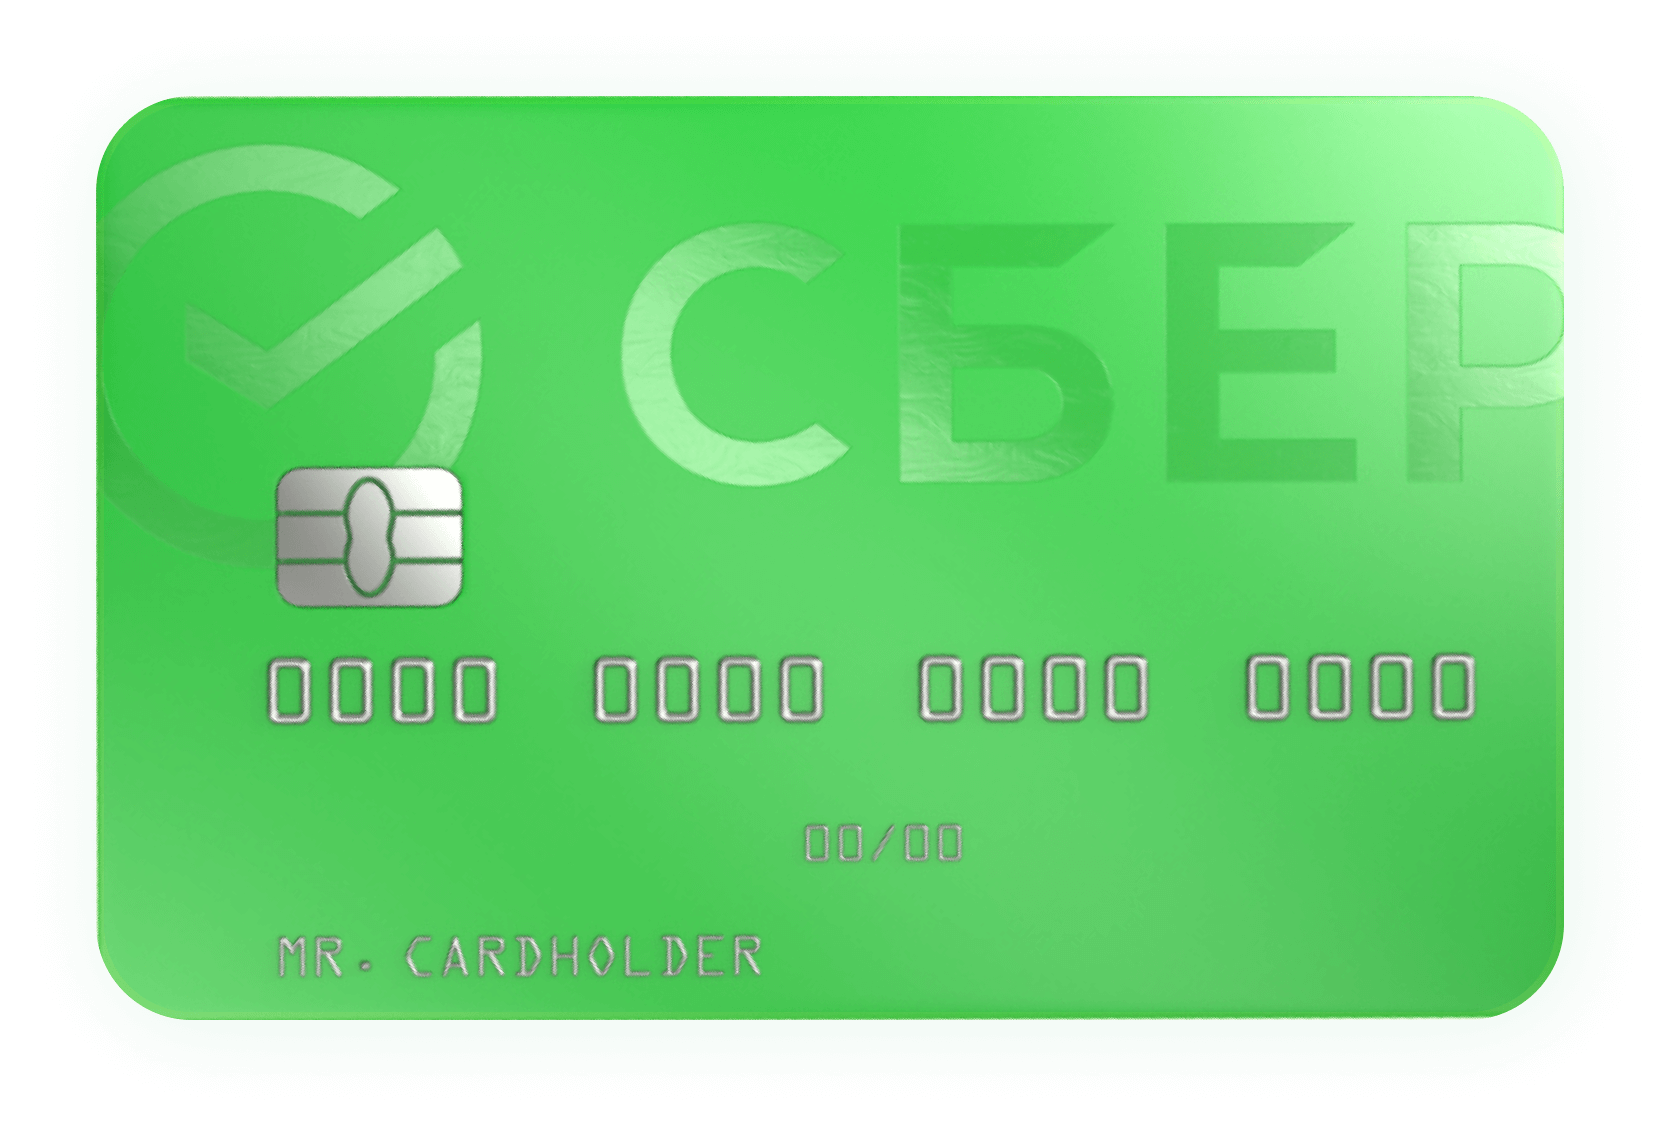 Изображение примера кредитной карты Сбербанка